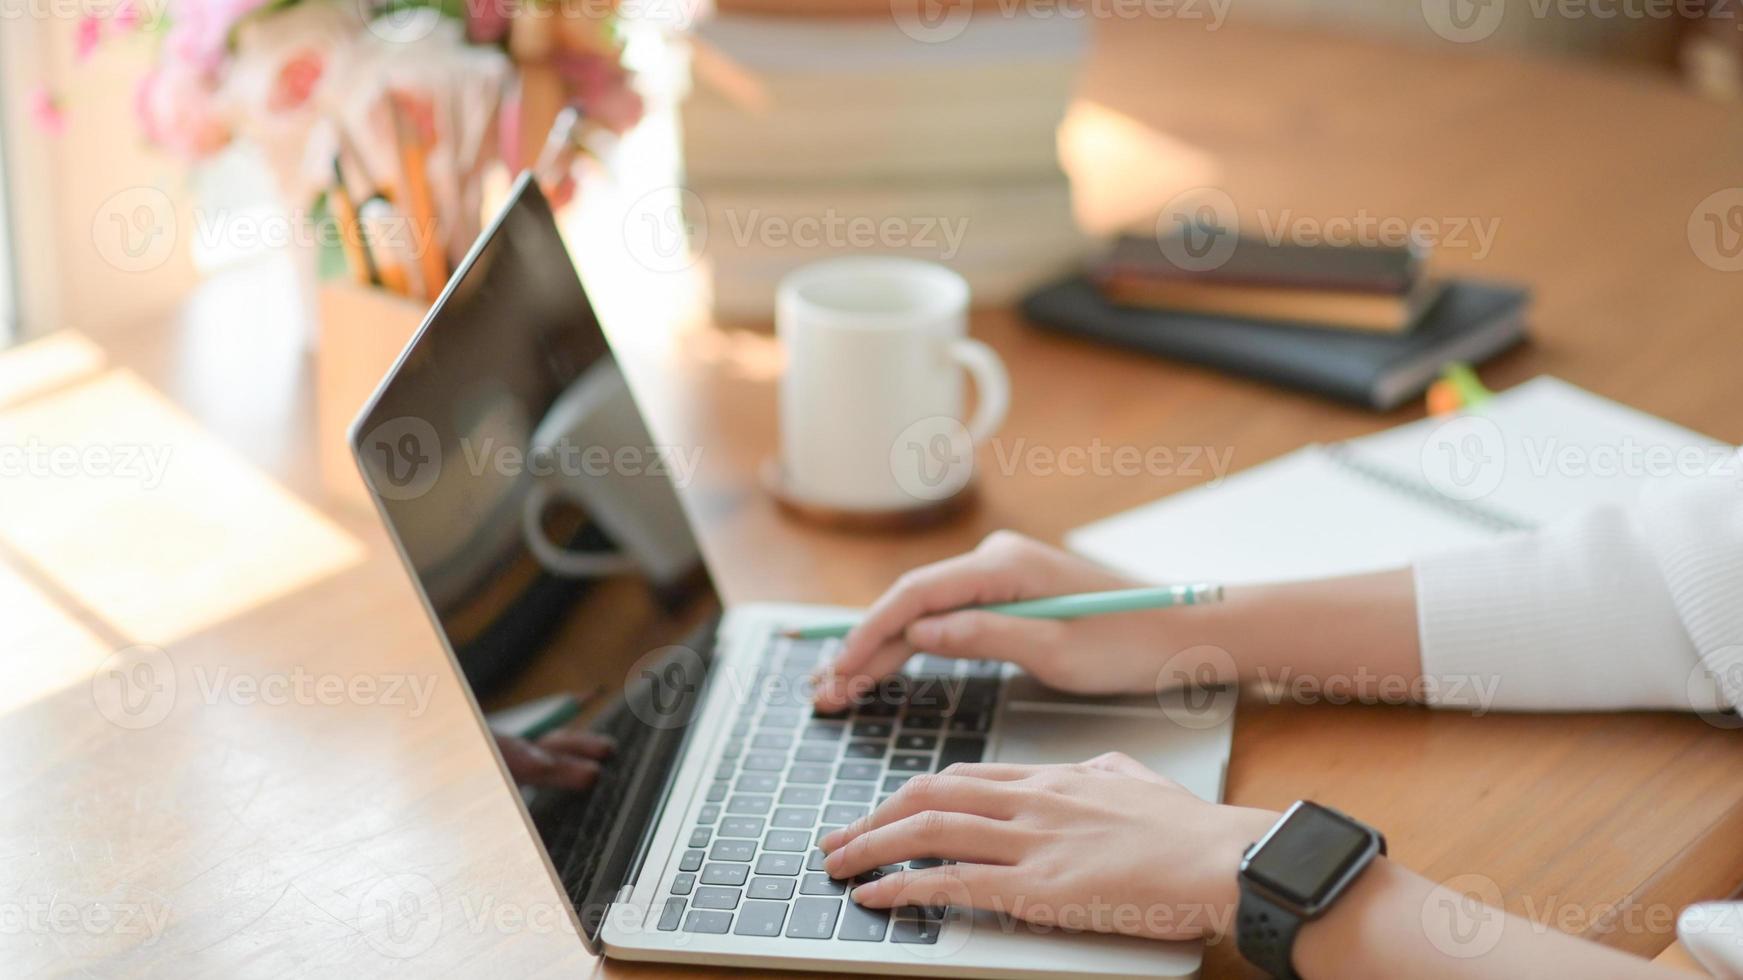 på nära håll använder den unga tjejens hand en bärbar dator på ett träbord på kontoret med vacker belysning. foto